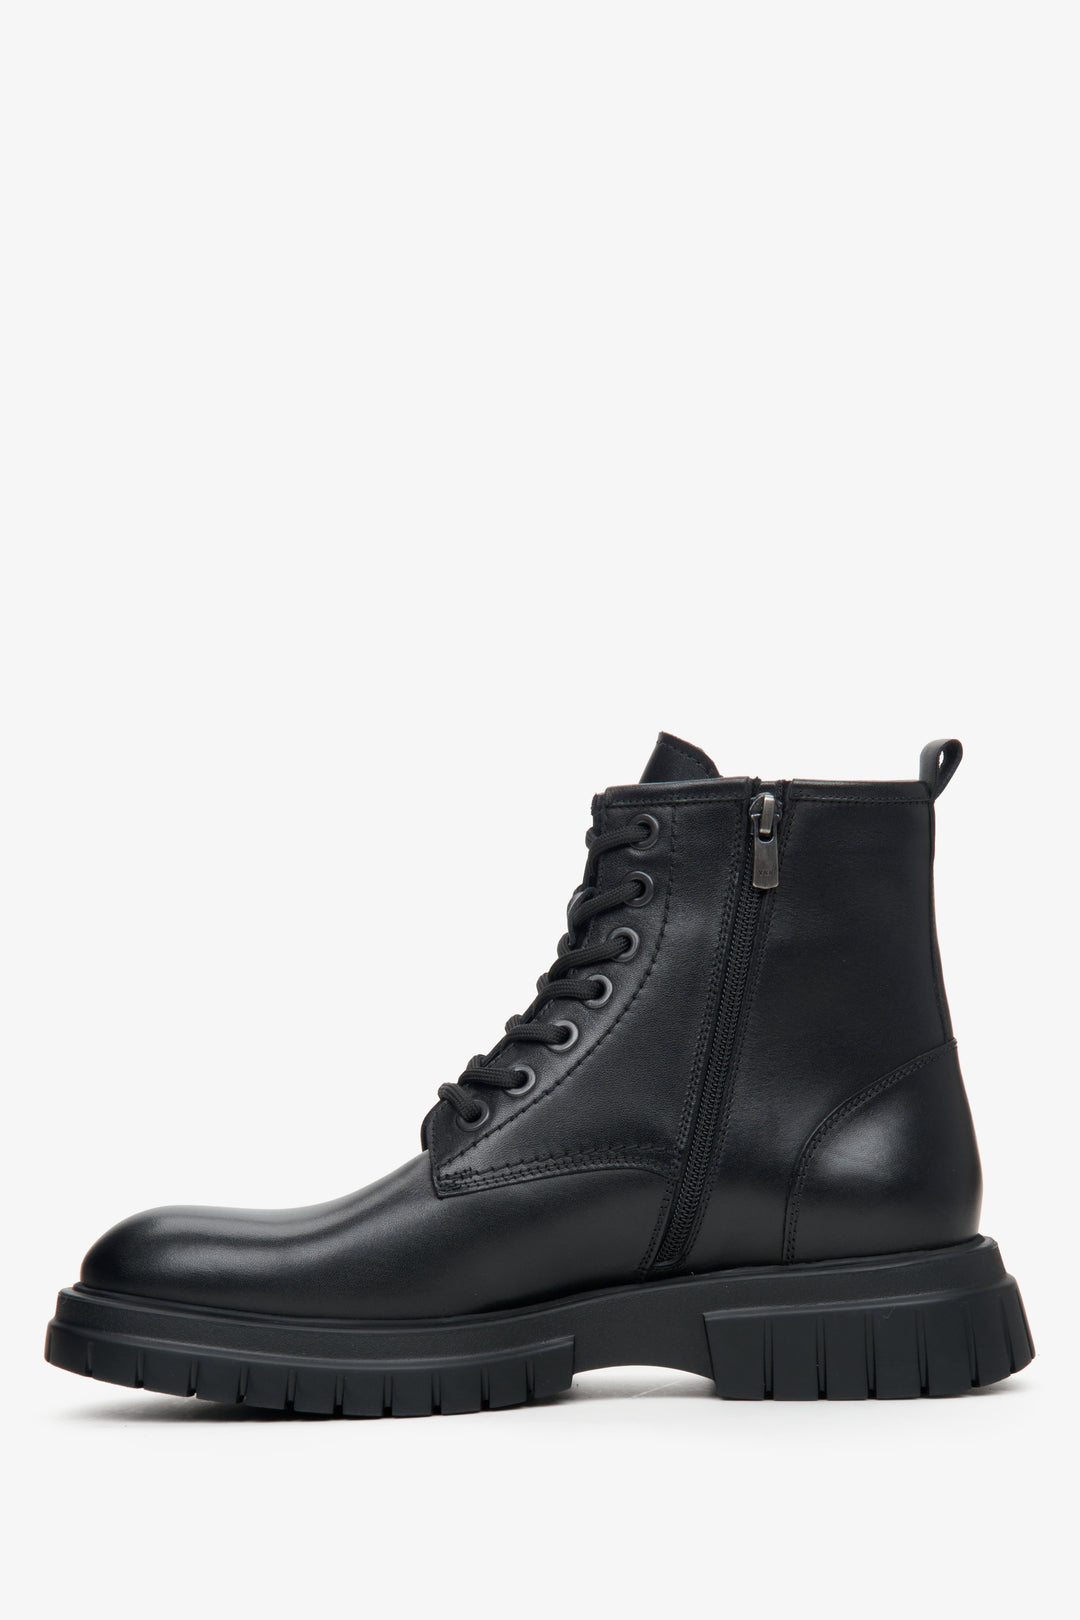 Men's black leather Estro ankle boots for autumn - shoe profile.